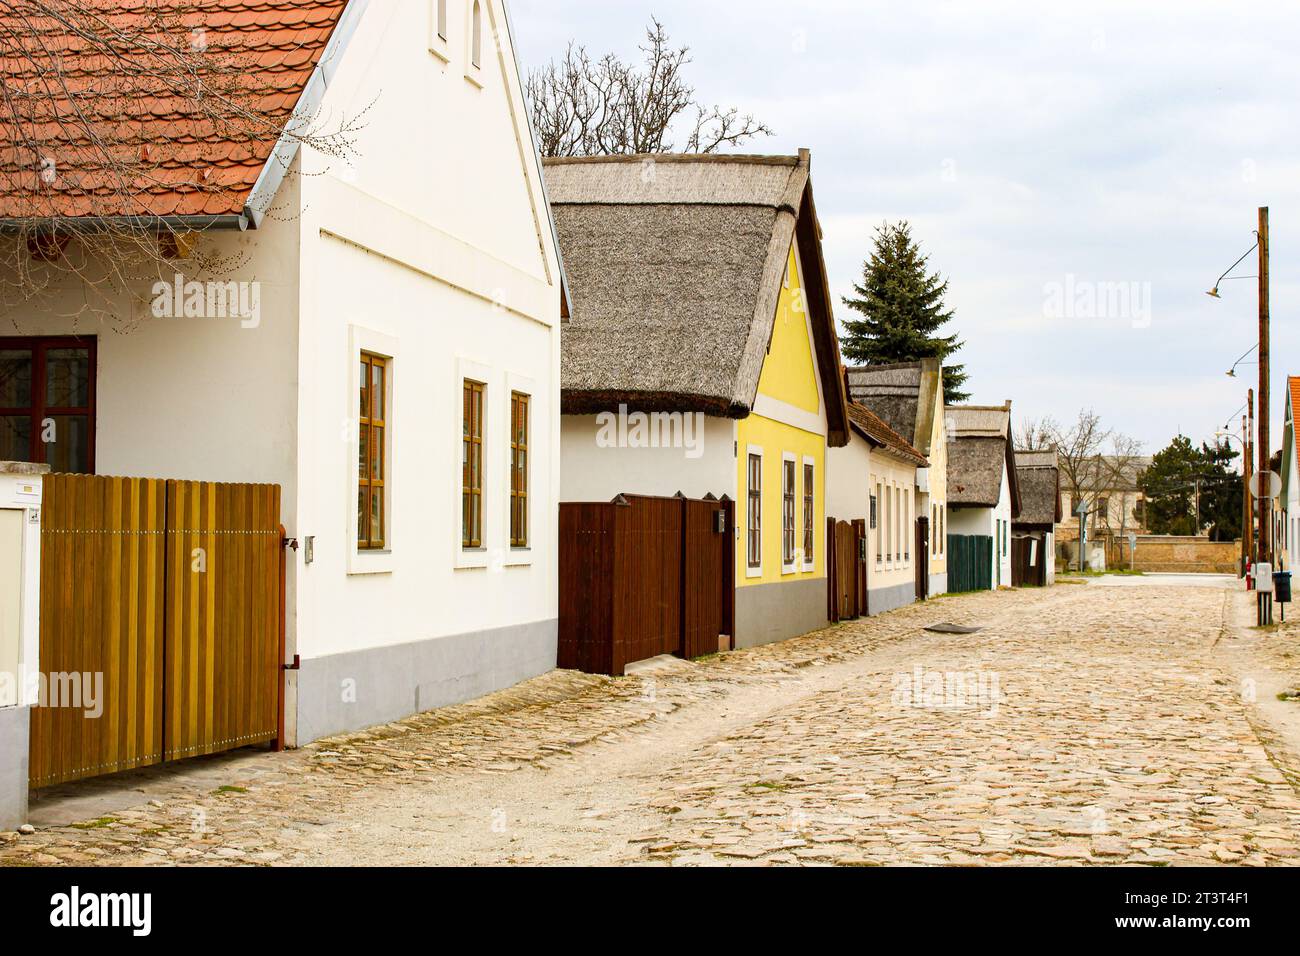 Una strada costituita da vecchie case coloniche con una strada lastricata in pietra in Ungheria Foto Stock